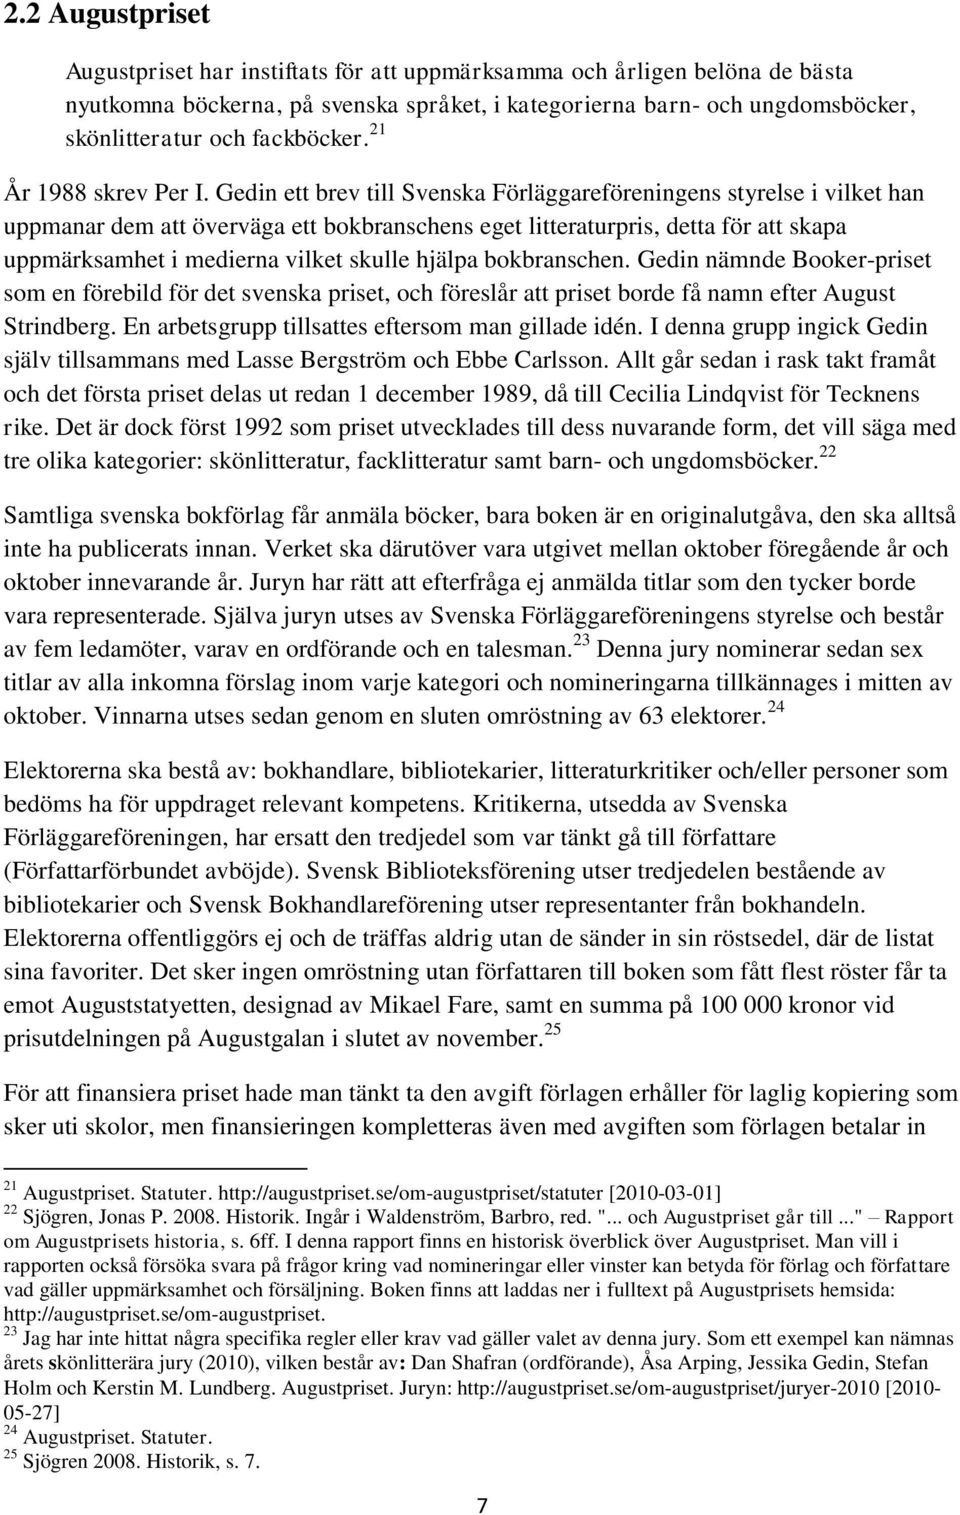 Gedin ett brev till Svenska Förläggareföreningens styrelse i vilket han uppmanar dem att överväga ett bokbranschens eget litteraturpris, detta för att skapa uppmärksamhet i medierna vilket skulle